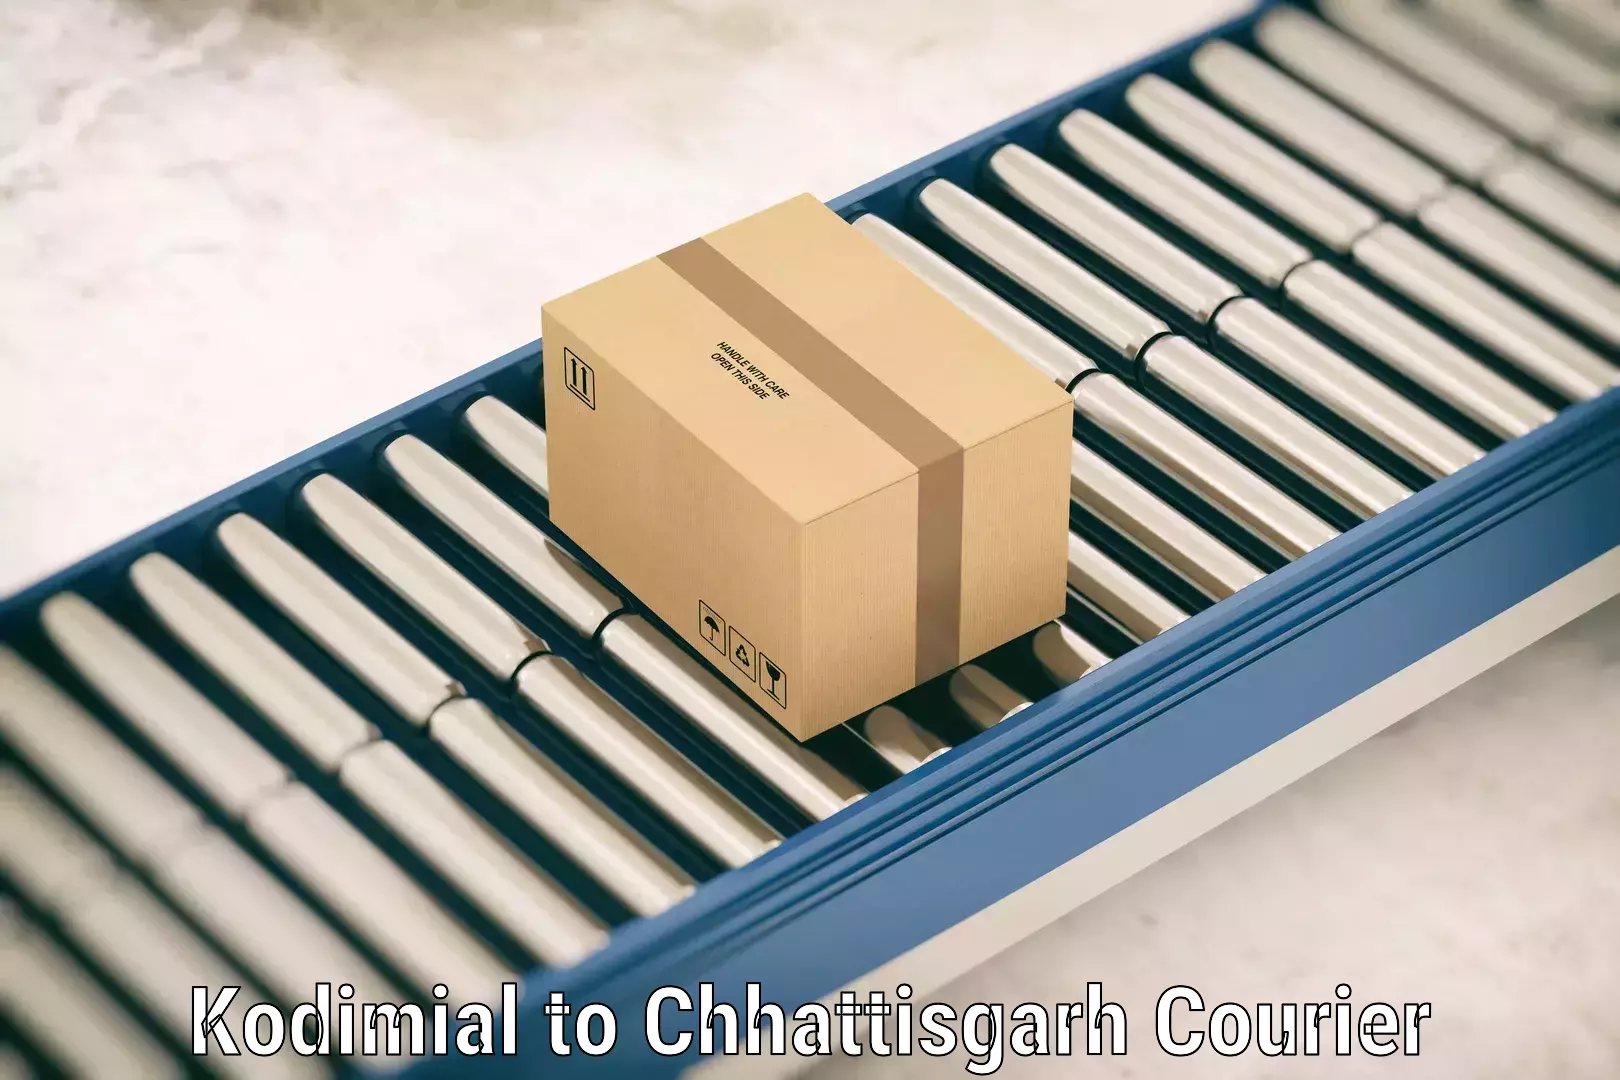 Luggage delivery news Kodimial to Korea Chhattisgarh